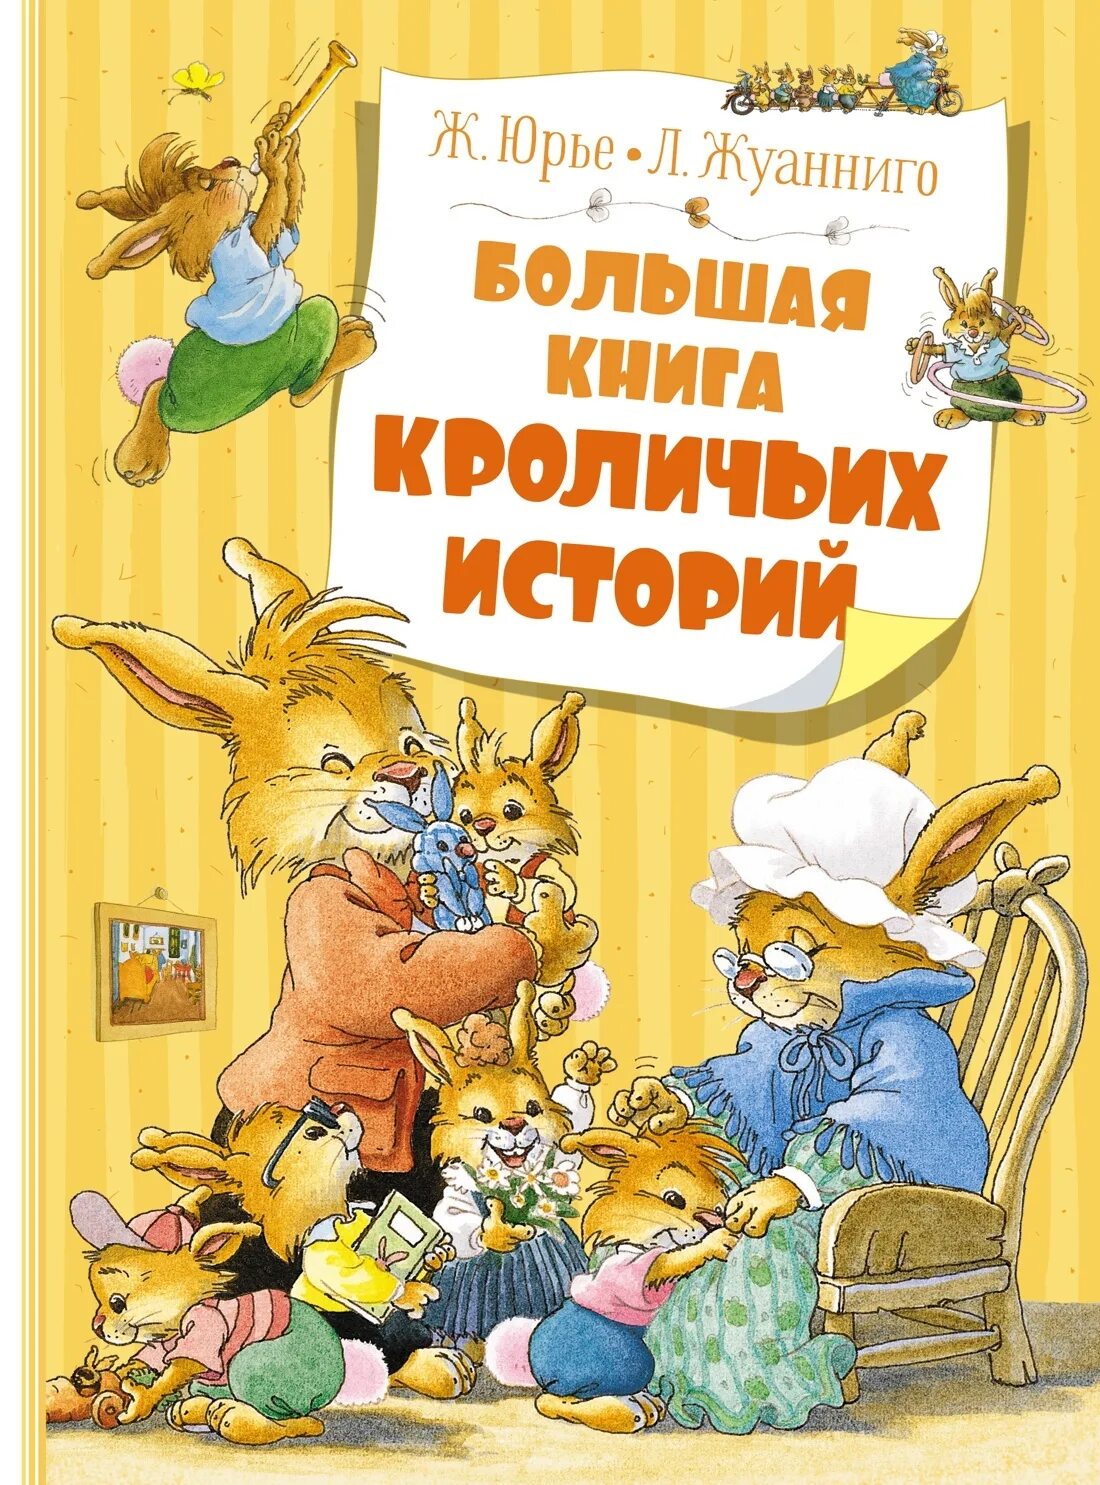 Кроличьи истории книга. Книга Юрье большая книга кроличьих историй. Ж.Юрье, л. Жуанниго большая книга кроличьих историй.